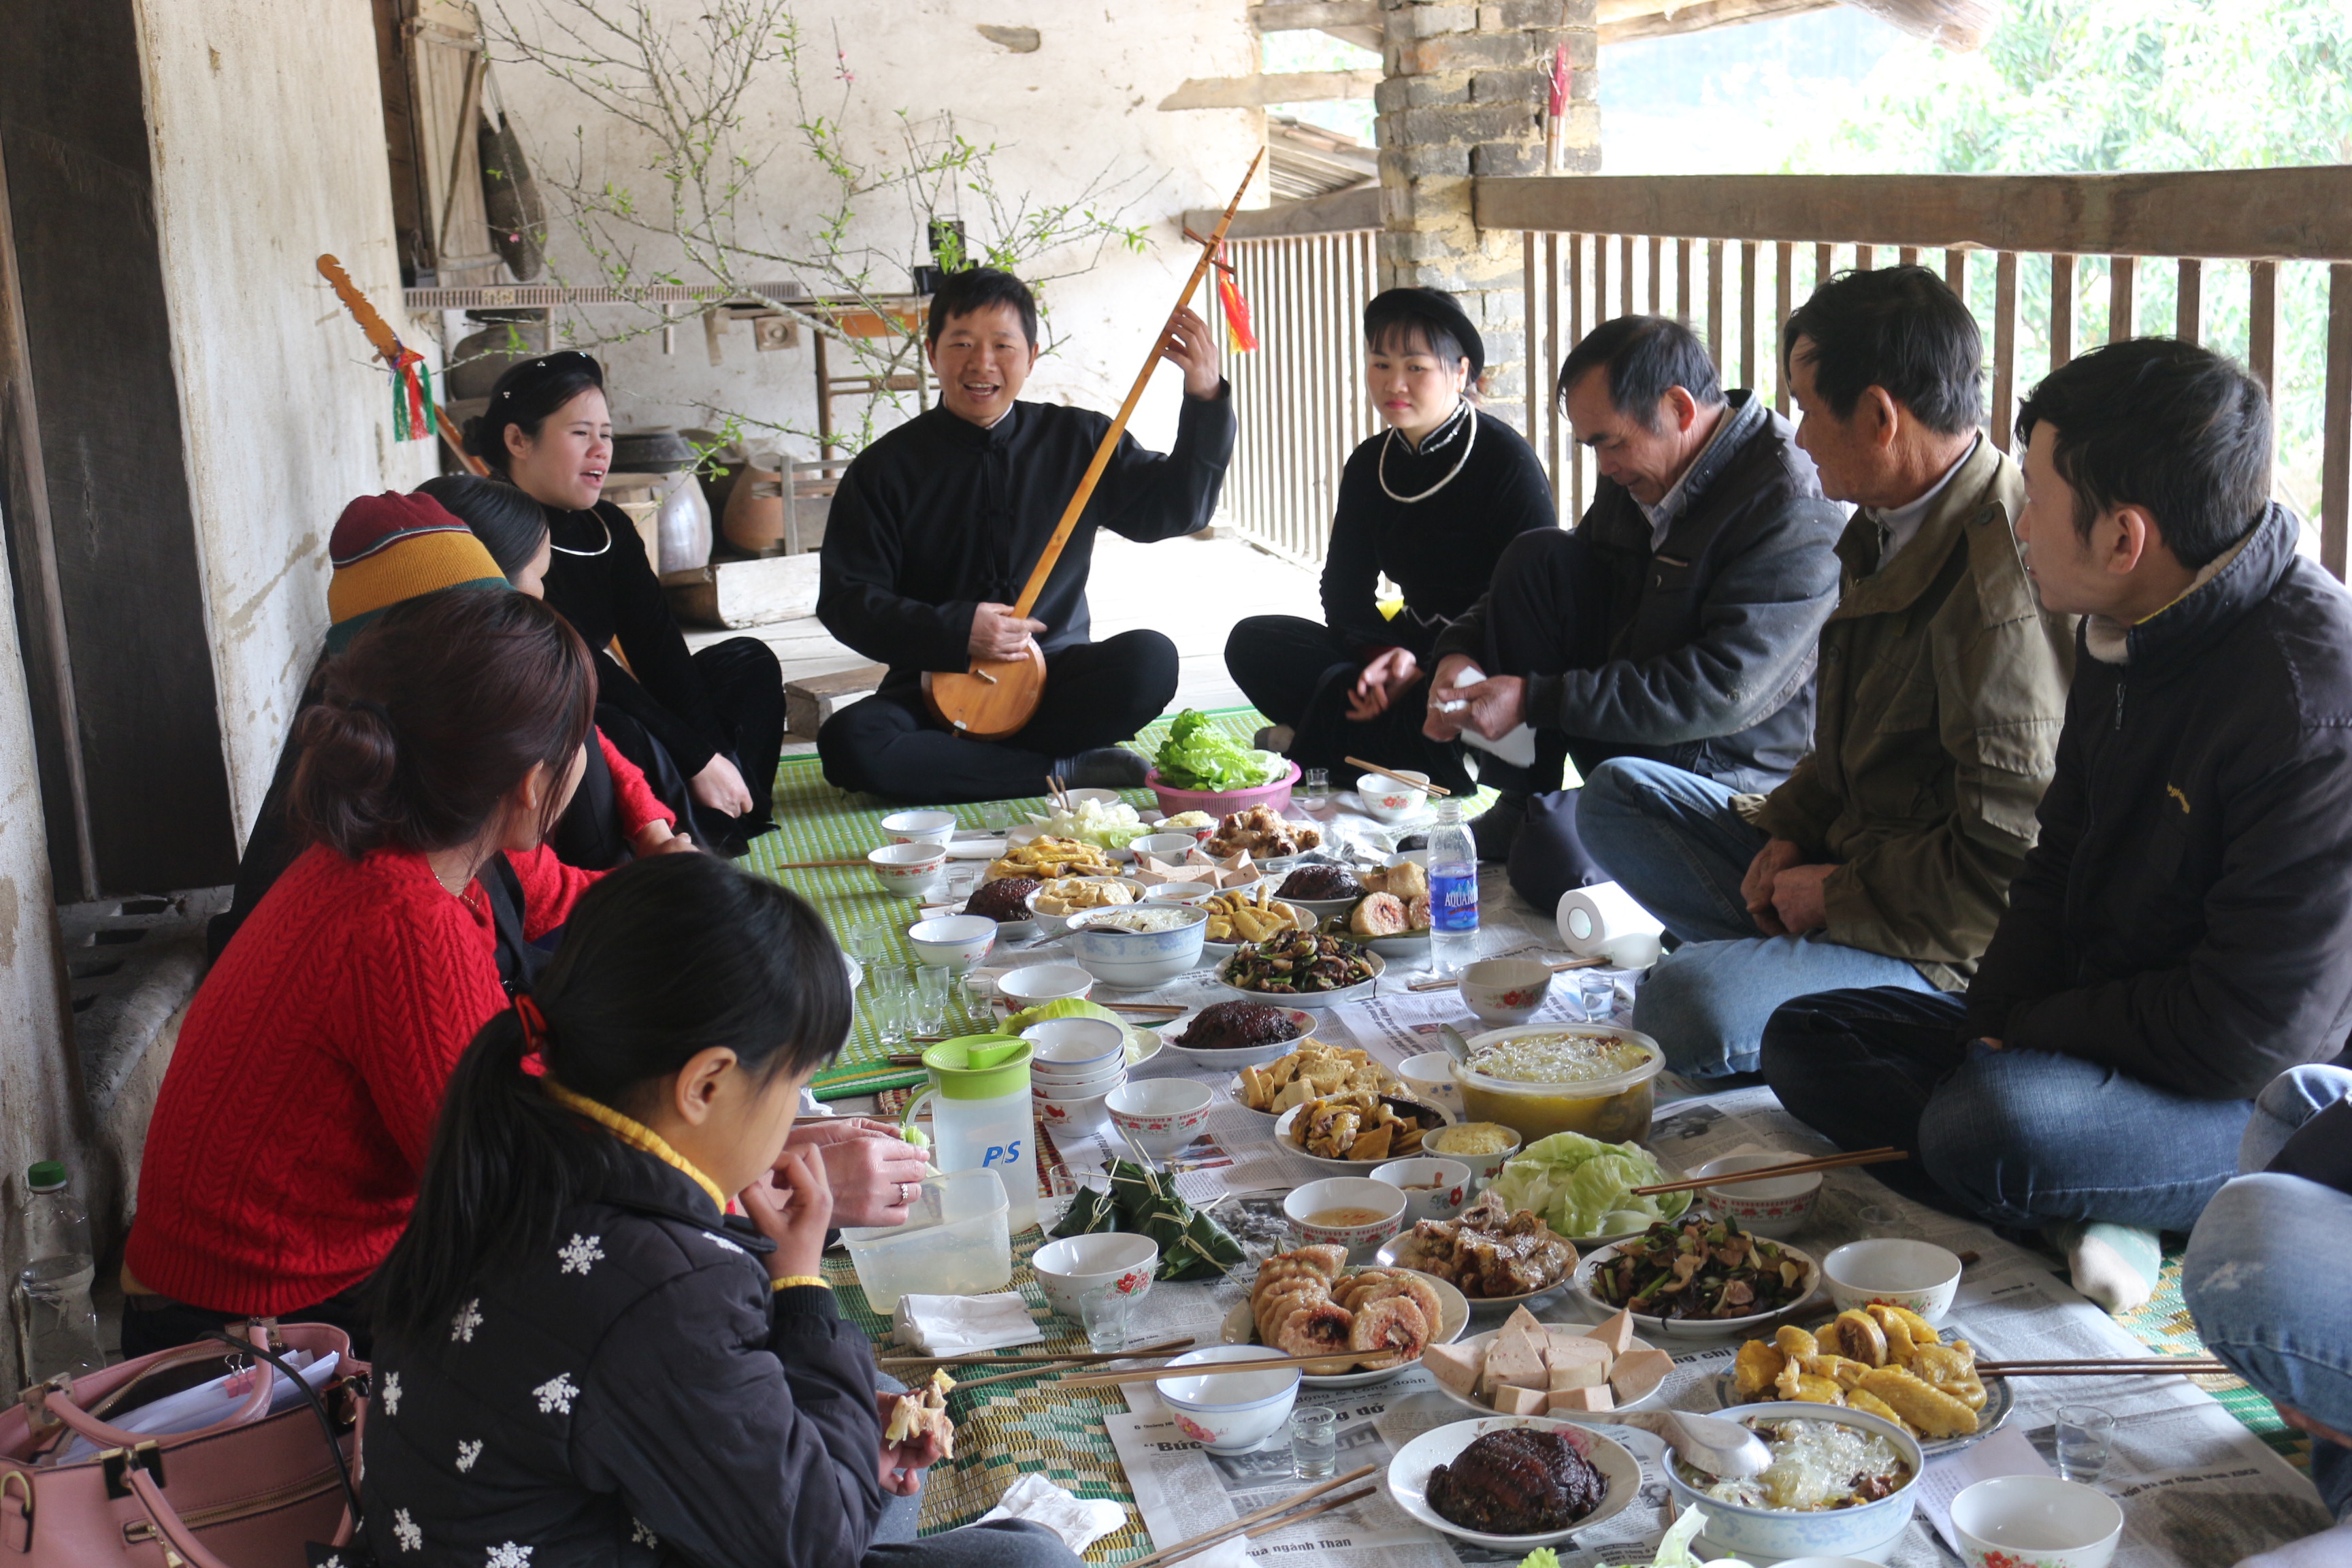 Đắp nọi - một trong những lễ hội truyền thống của người Tày lâu đời sẽ được tổ chức lại vào năm 2024 tại Tuyên Quang. Sự kiện hội tụ các phong tục văn hóa truyền thống của người Tày, hứa hẹn trở thành bữa tiệc tình nghĩa đầy ý nghĩa cho du khách mùa Xuân.